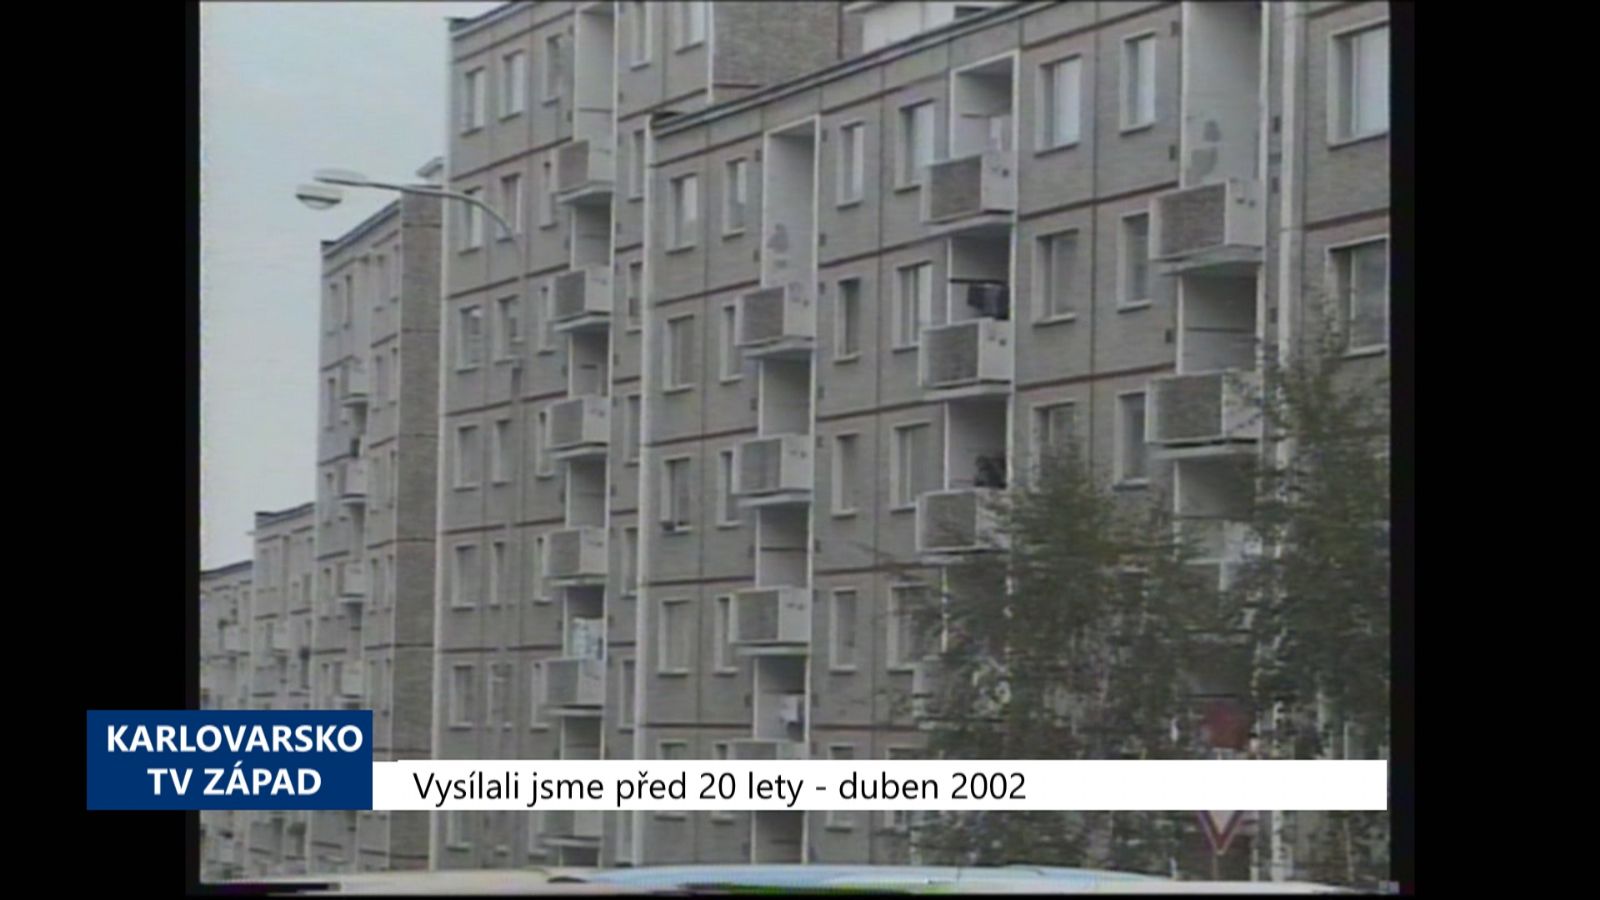 2002 – Cheb: Prodej šesti bytů zablokovalo Zastupitelstvo (TV Západ)